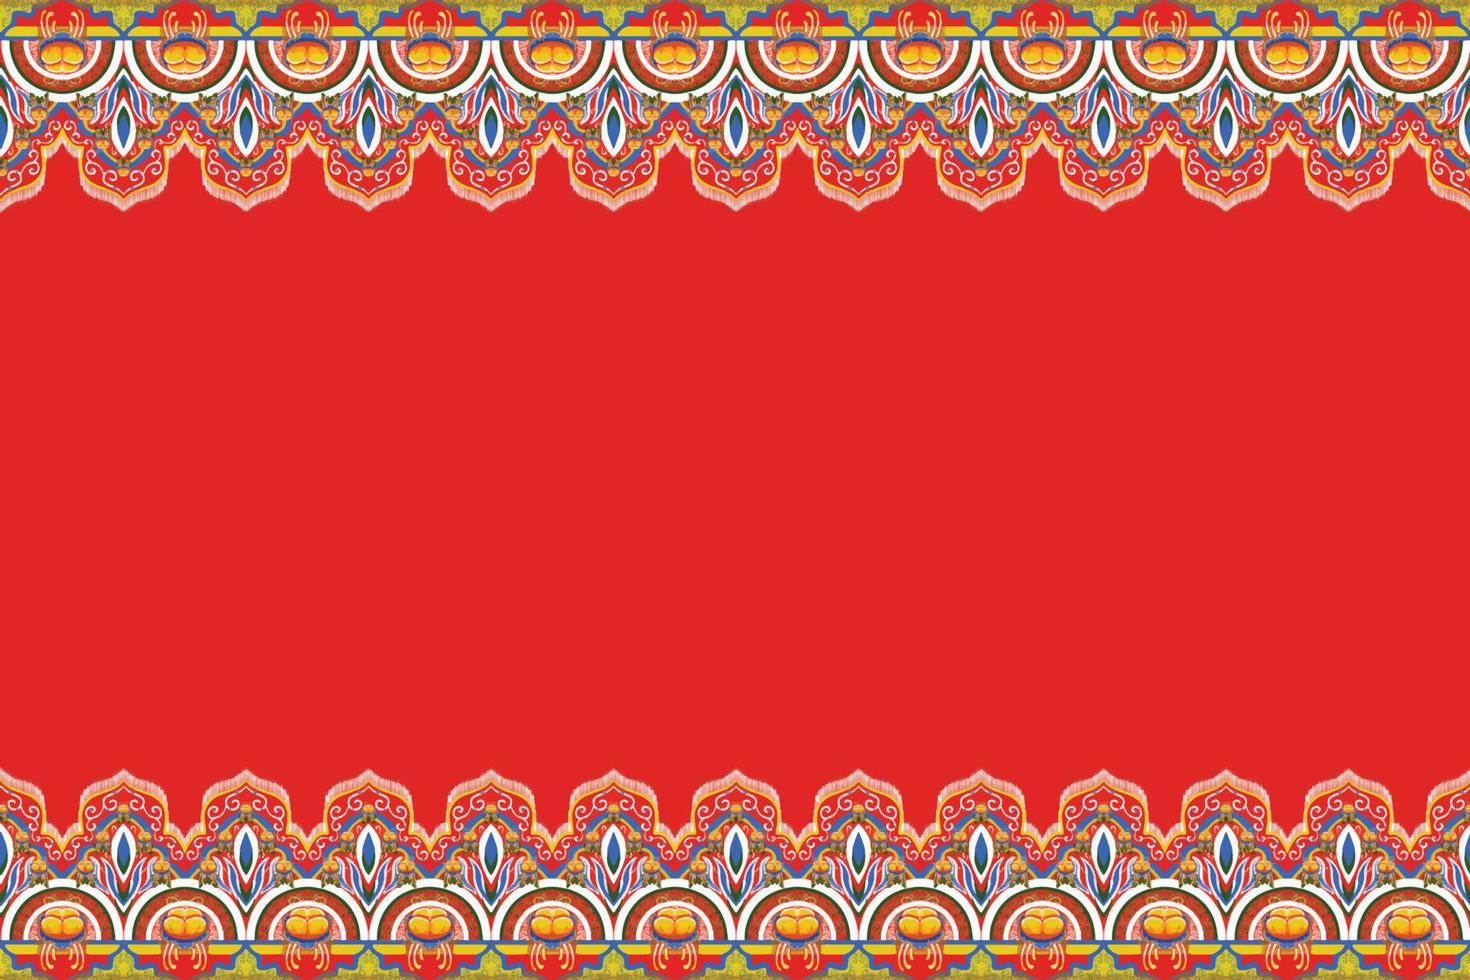 amarillo, azul, flor en rojo anaranjado. patrón geométrico étnico oriental diseño tradicional para fondo, alfombra, papel pintado, ropa, envoltura, batik, tela, estilo de bordado de ilustración vectorial vector